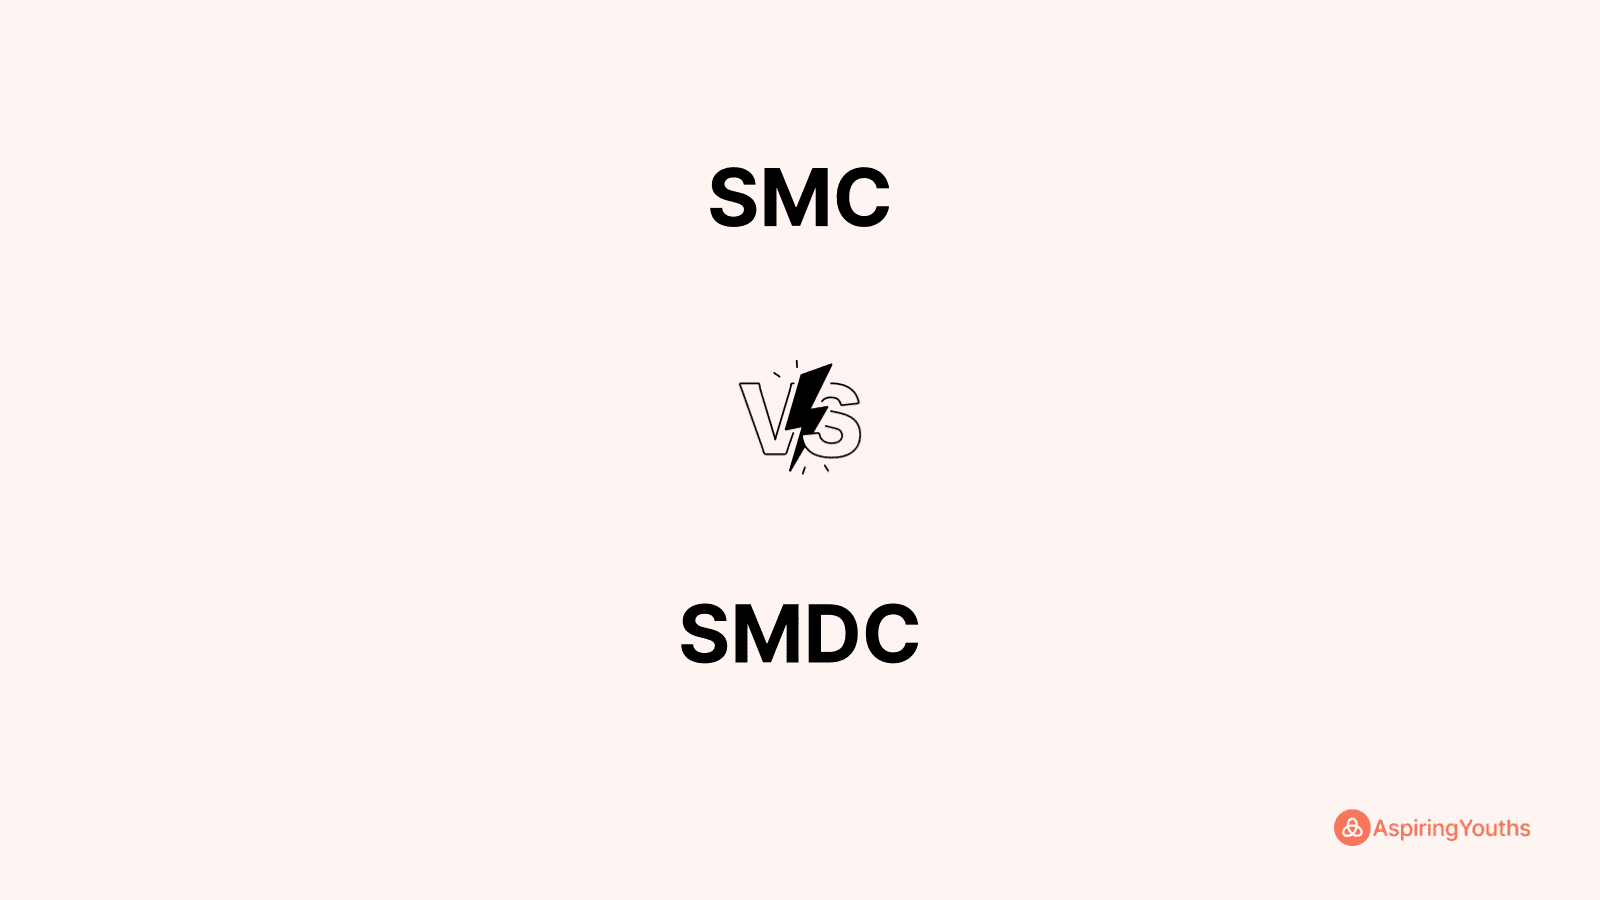 SMC vs SMDC